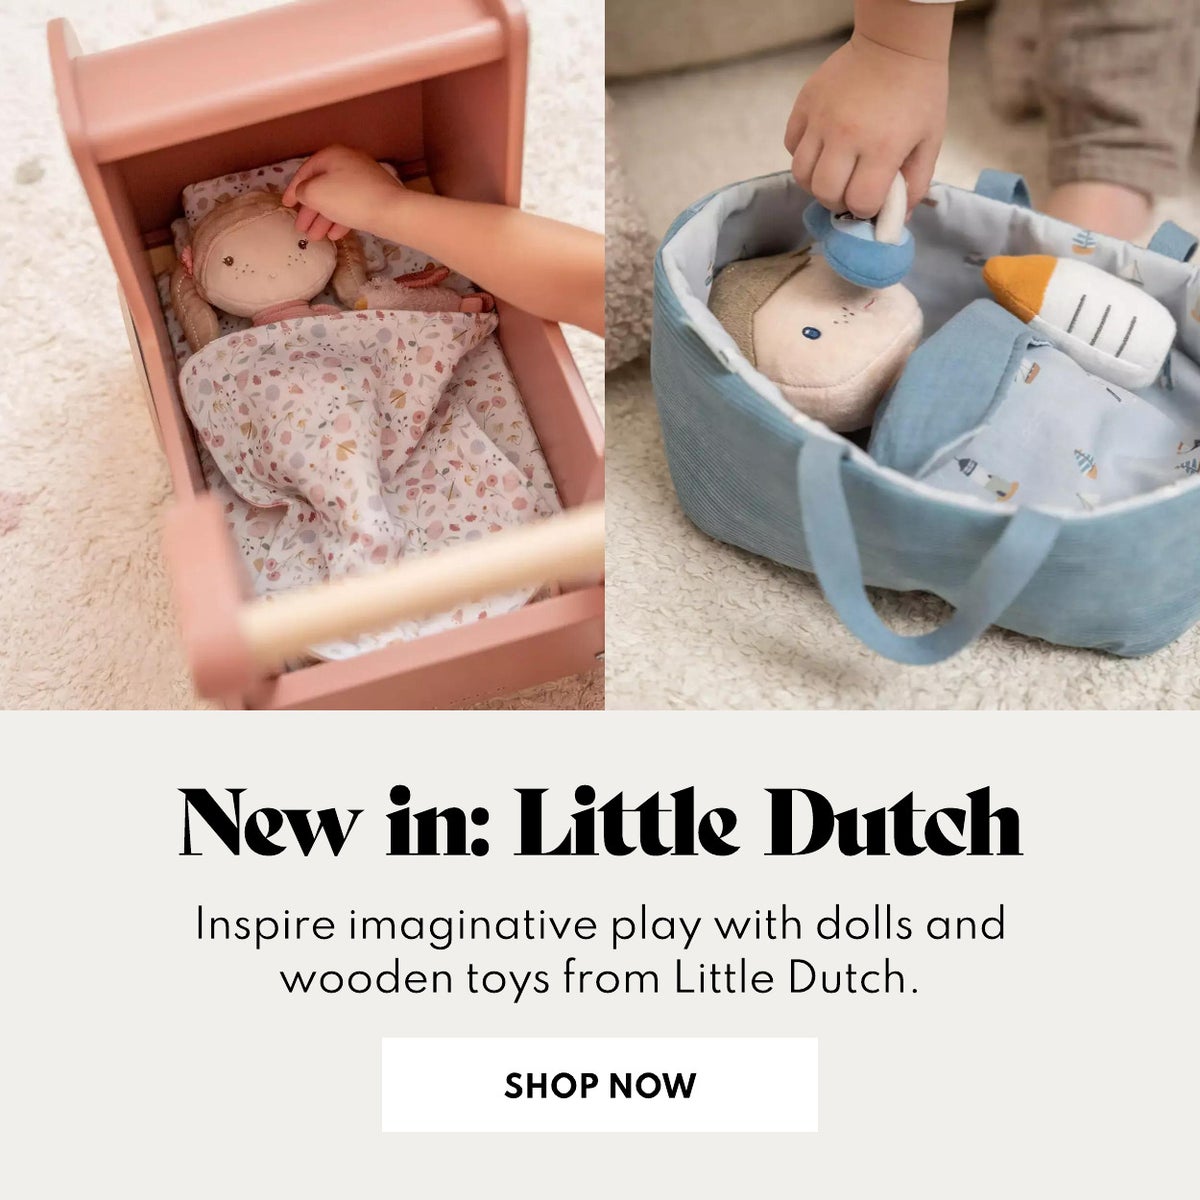 New in: Little Dutch